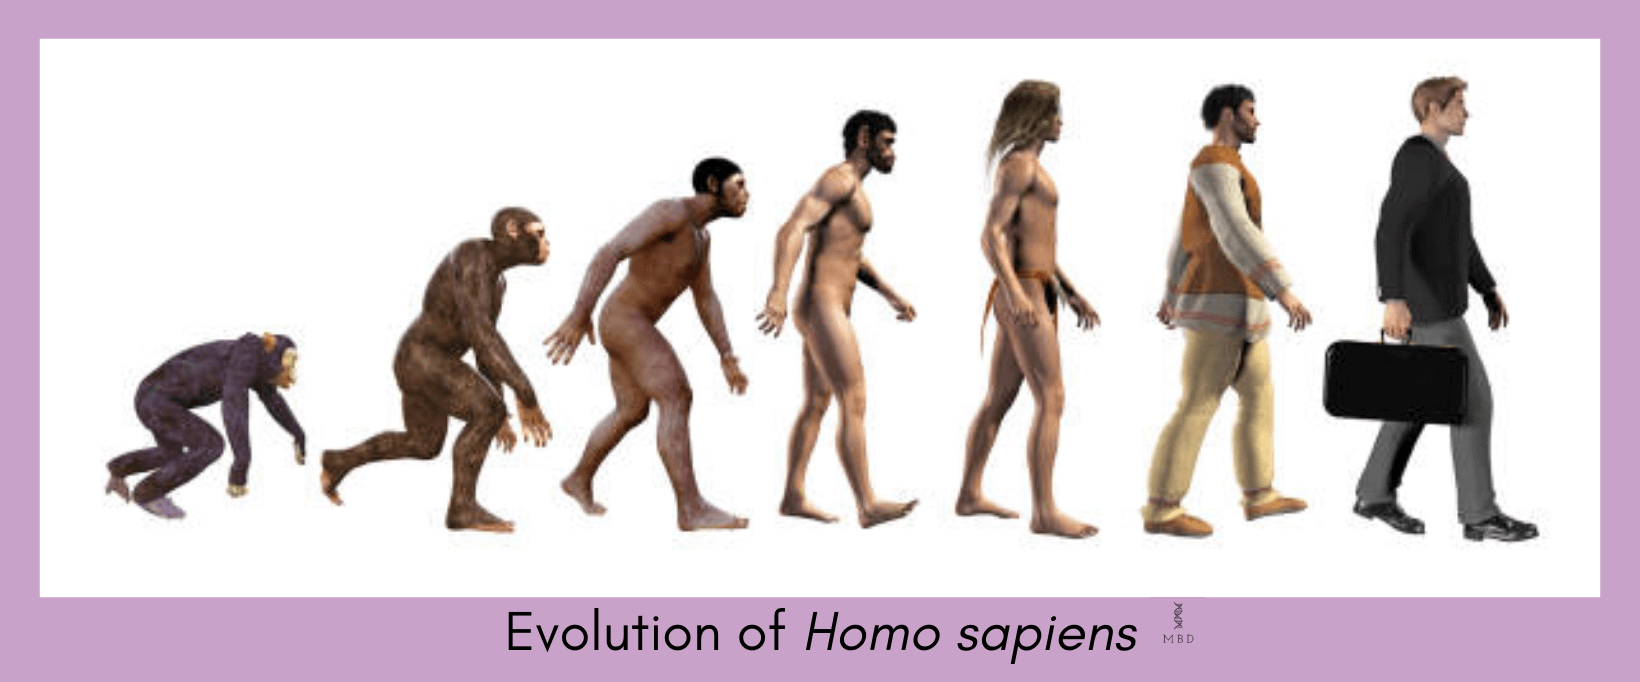 Evolution of Homo sapiens